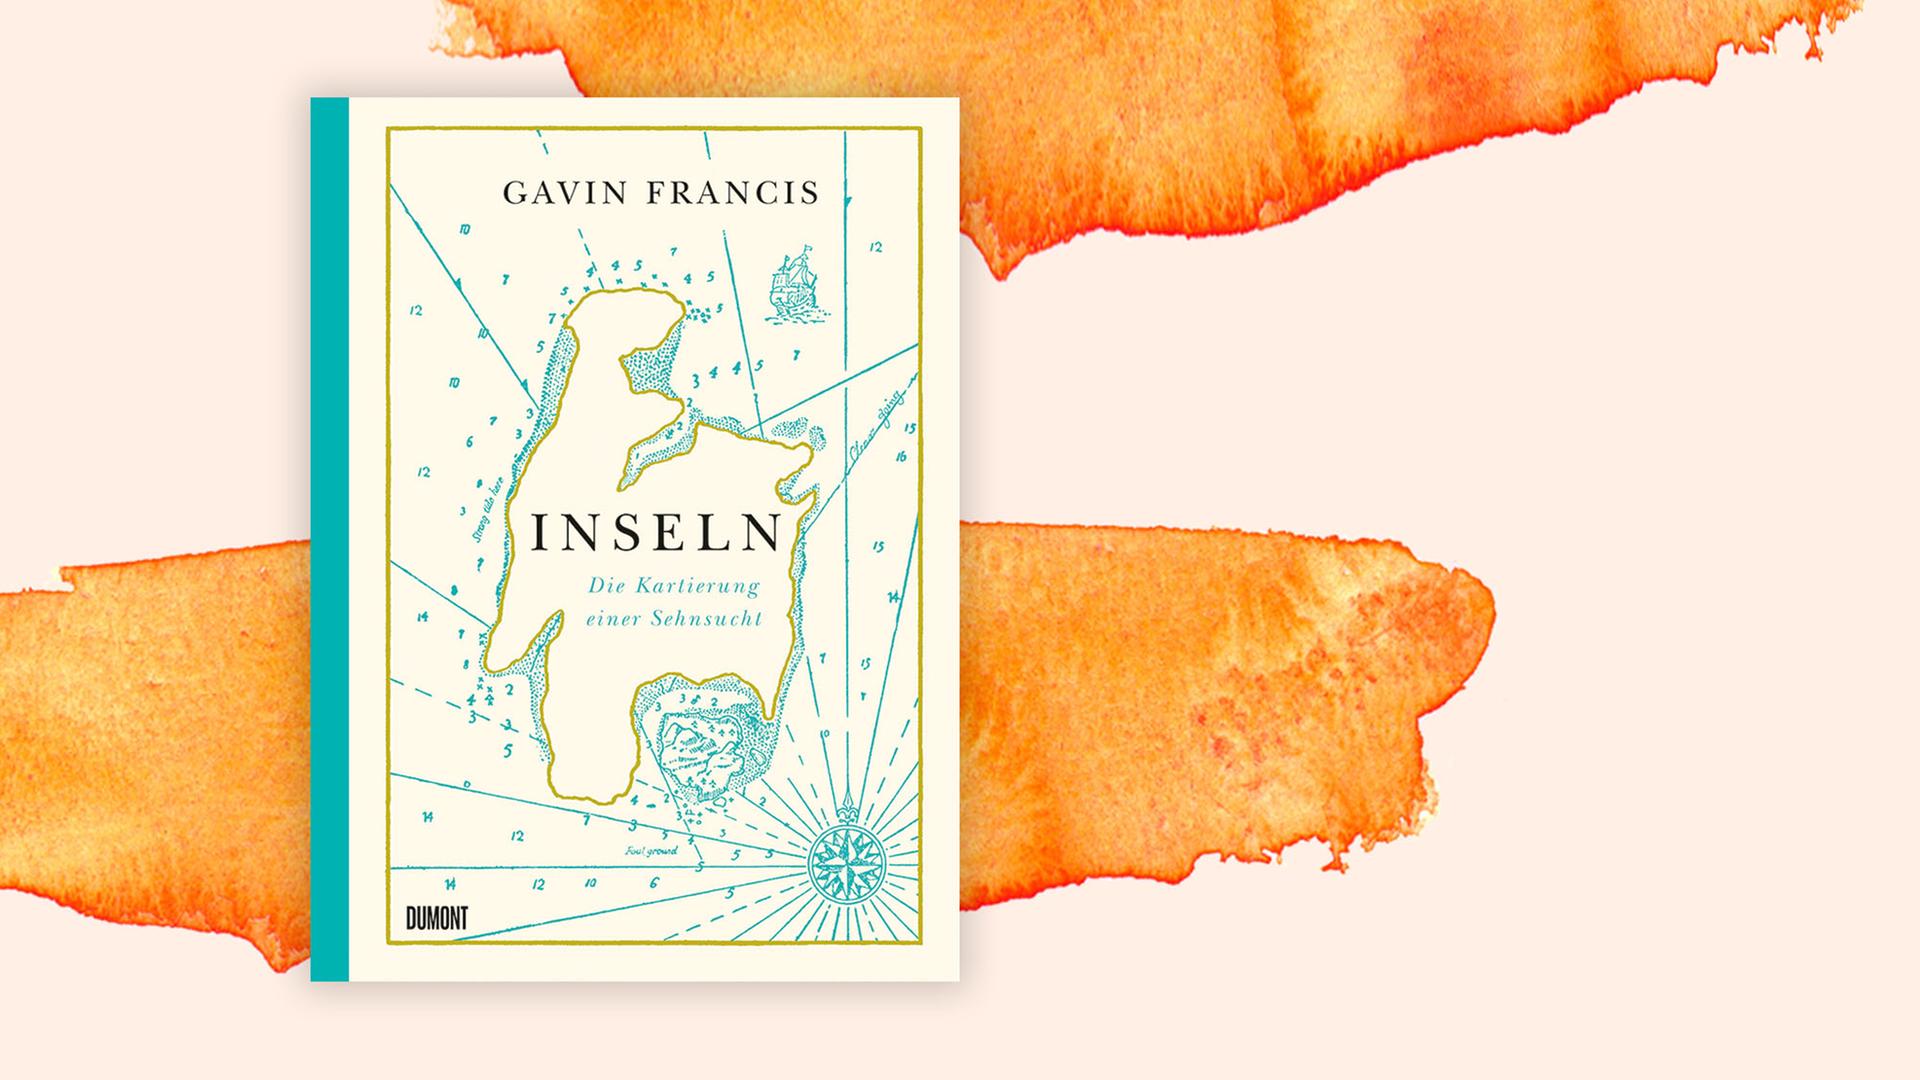 Das Buchcover von "Inseln. Die Kartierung einer Sehnsucht" liegt auf einem orangenem Aquarellhintergrund und zeigt einen Ausschnitt einer antiken Karte in verschiedenen Grüntönen.